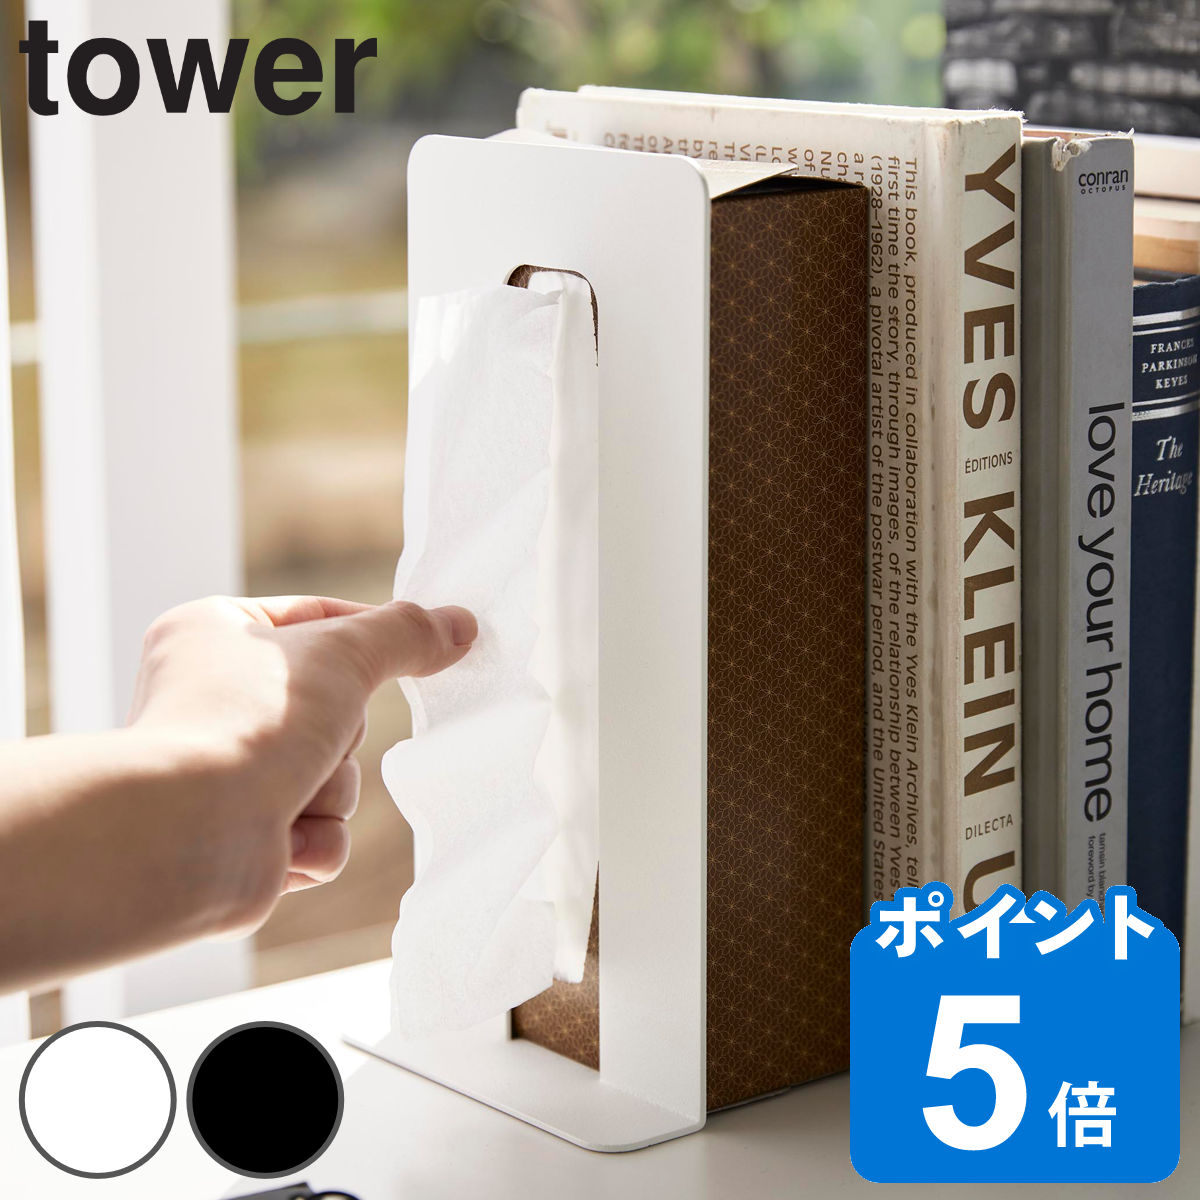 山崎実業 tower ティッシュが引き出せるブックエンド タワー